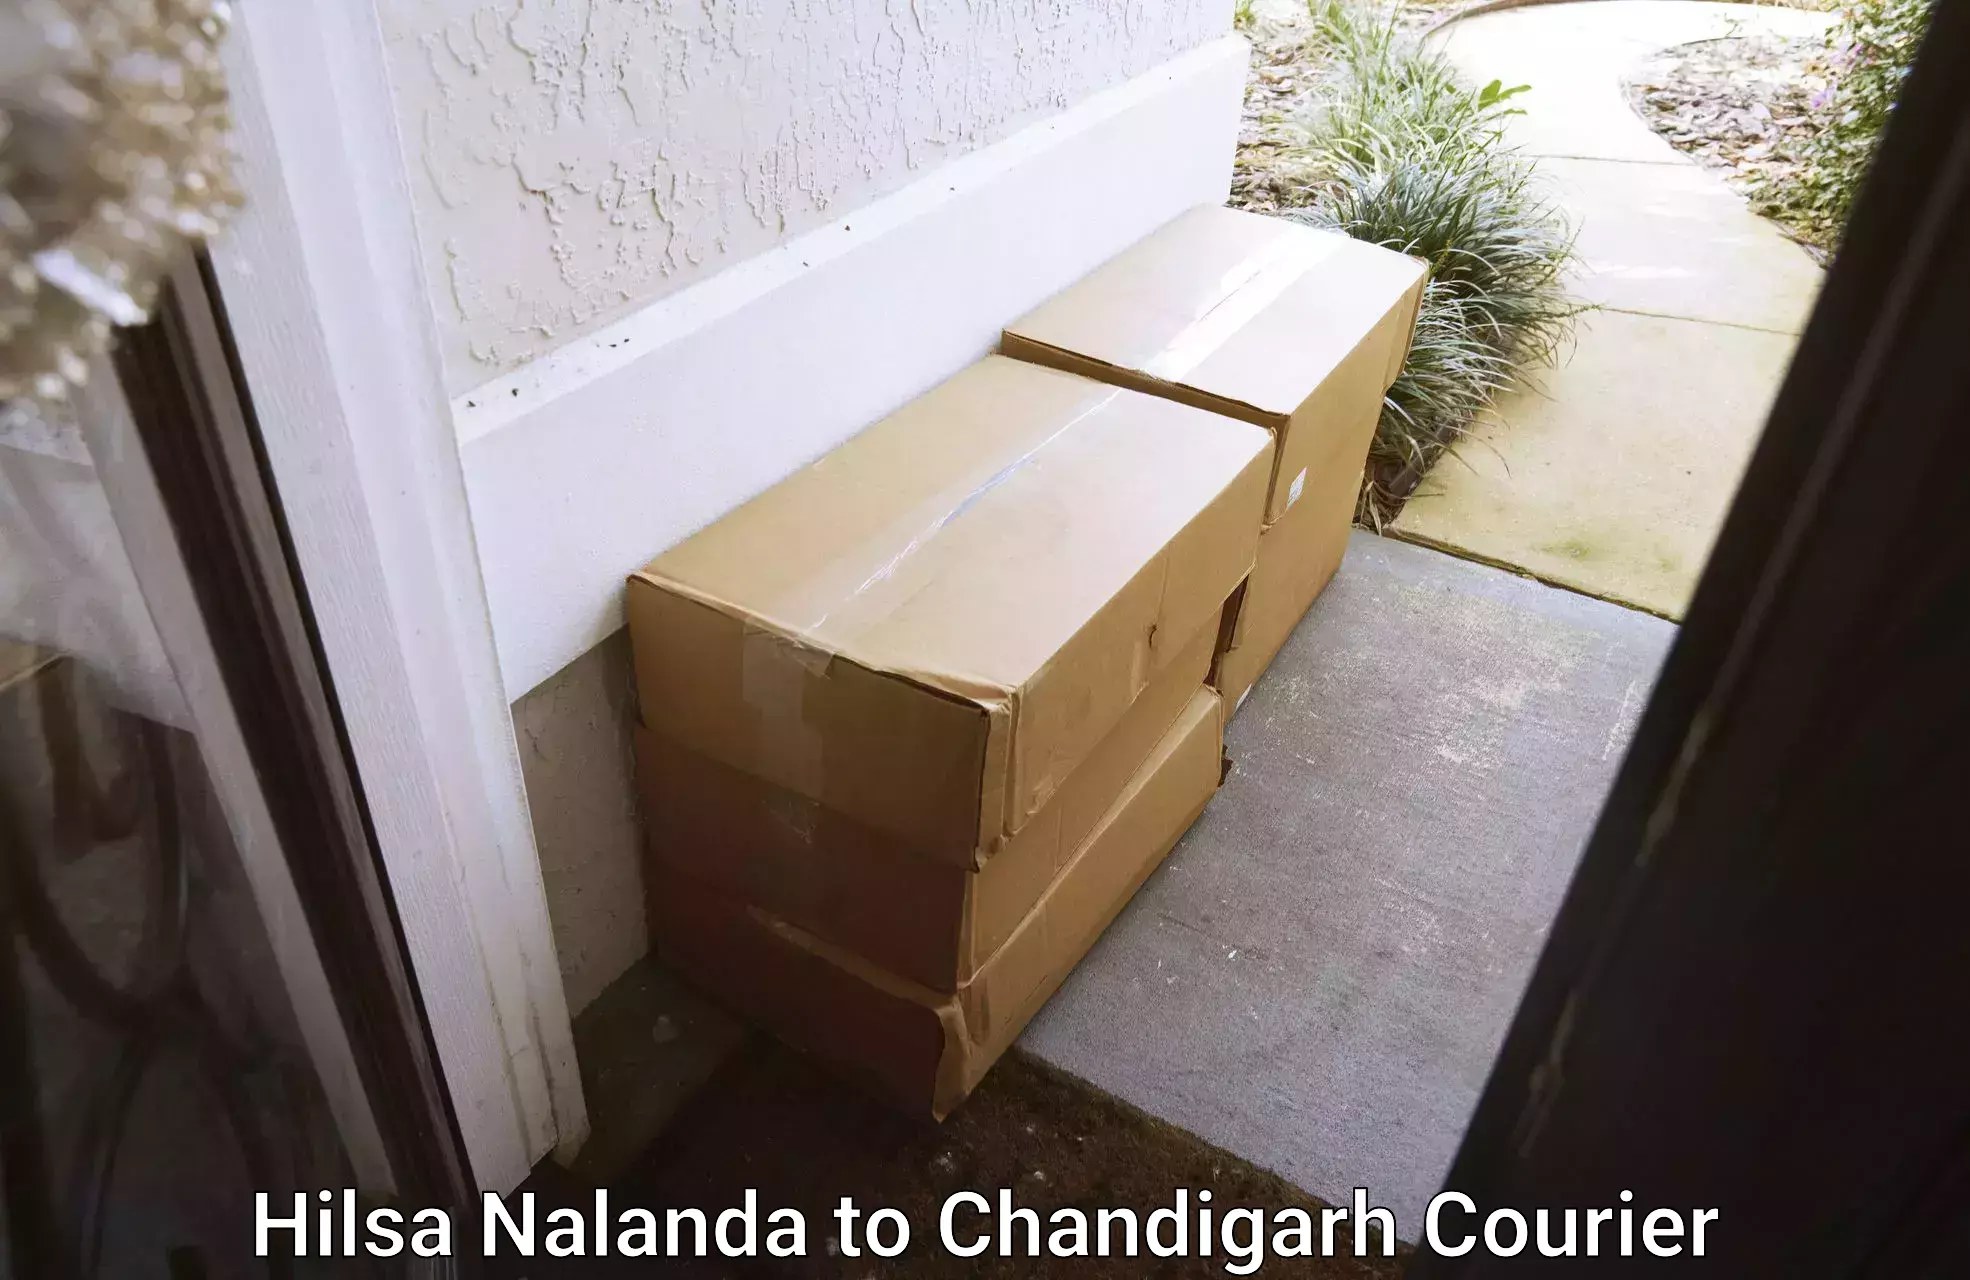 Professional moving company Hilsa Nalanda to Panjab University Chandigarh